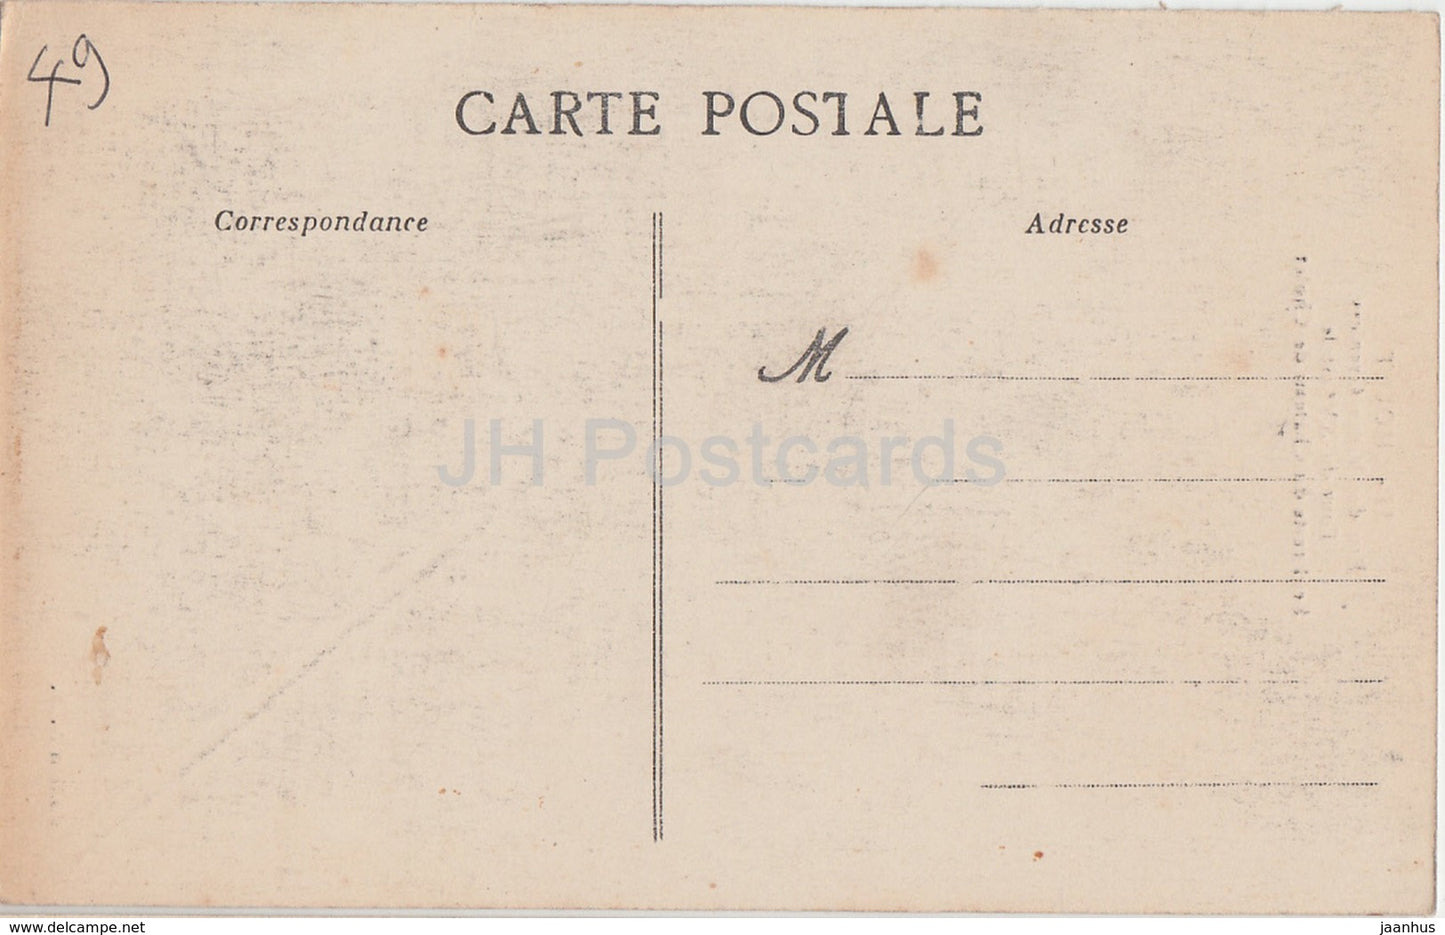 Cholet - Rue des Vieux Greniers - castle - 55 - old postcard - France - unused